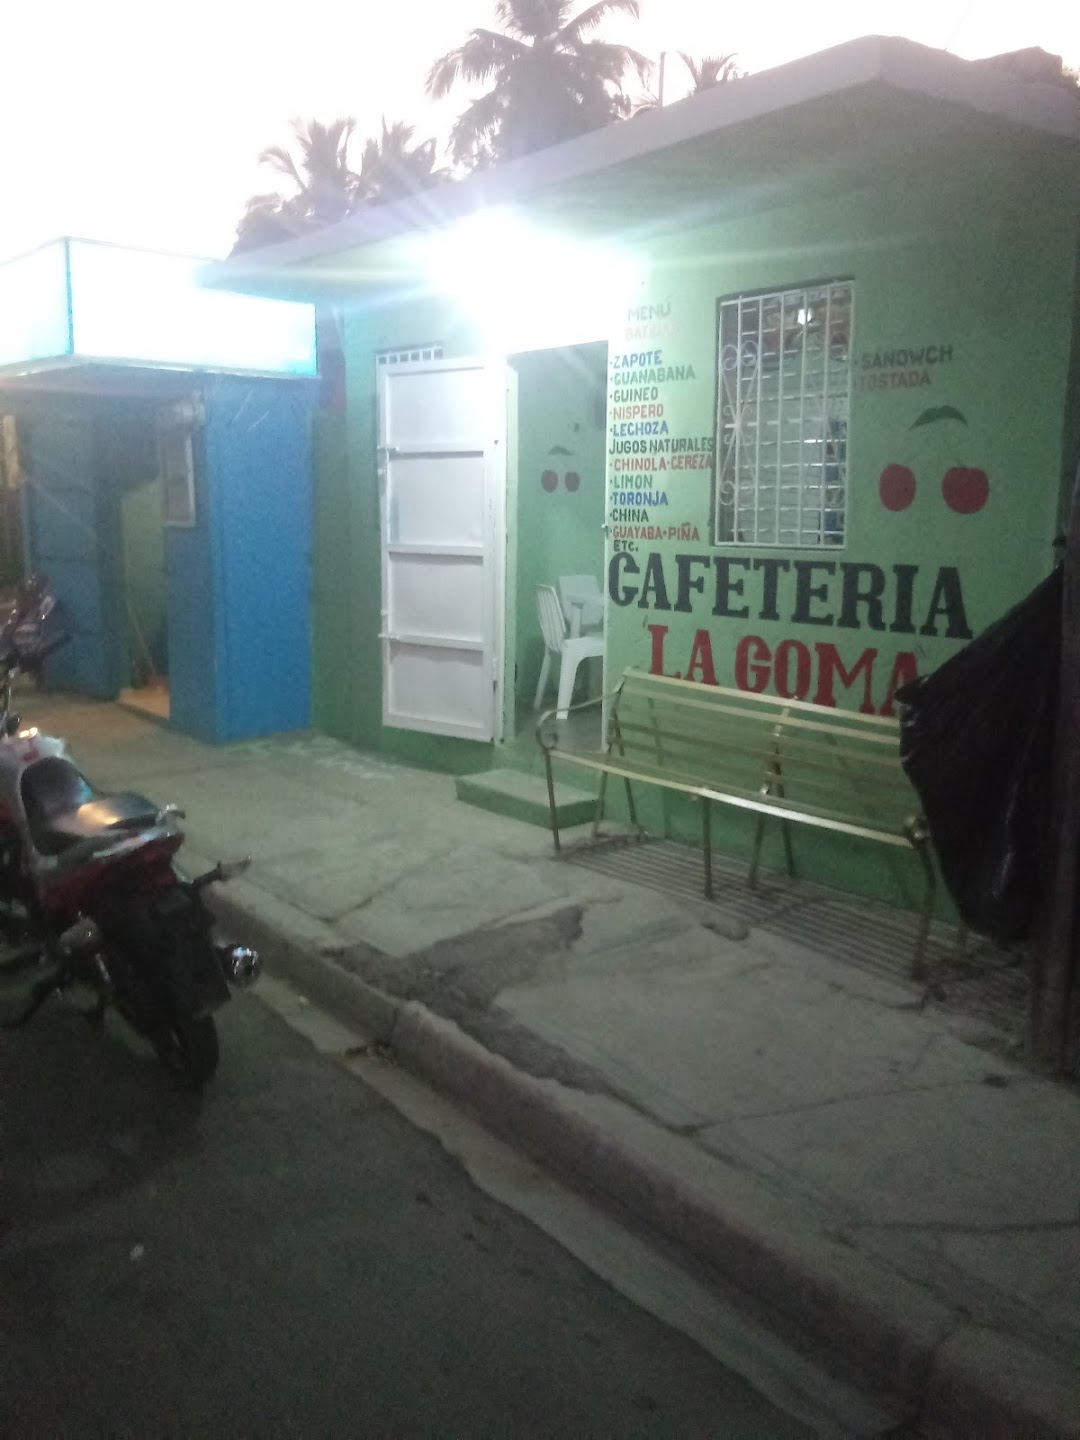 Cafeteria La Goma